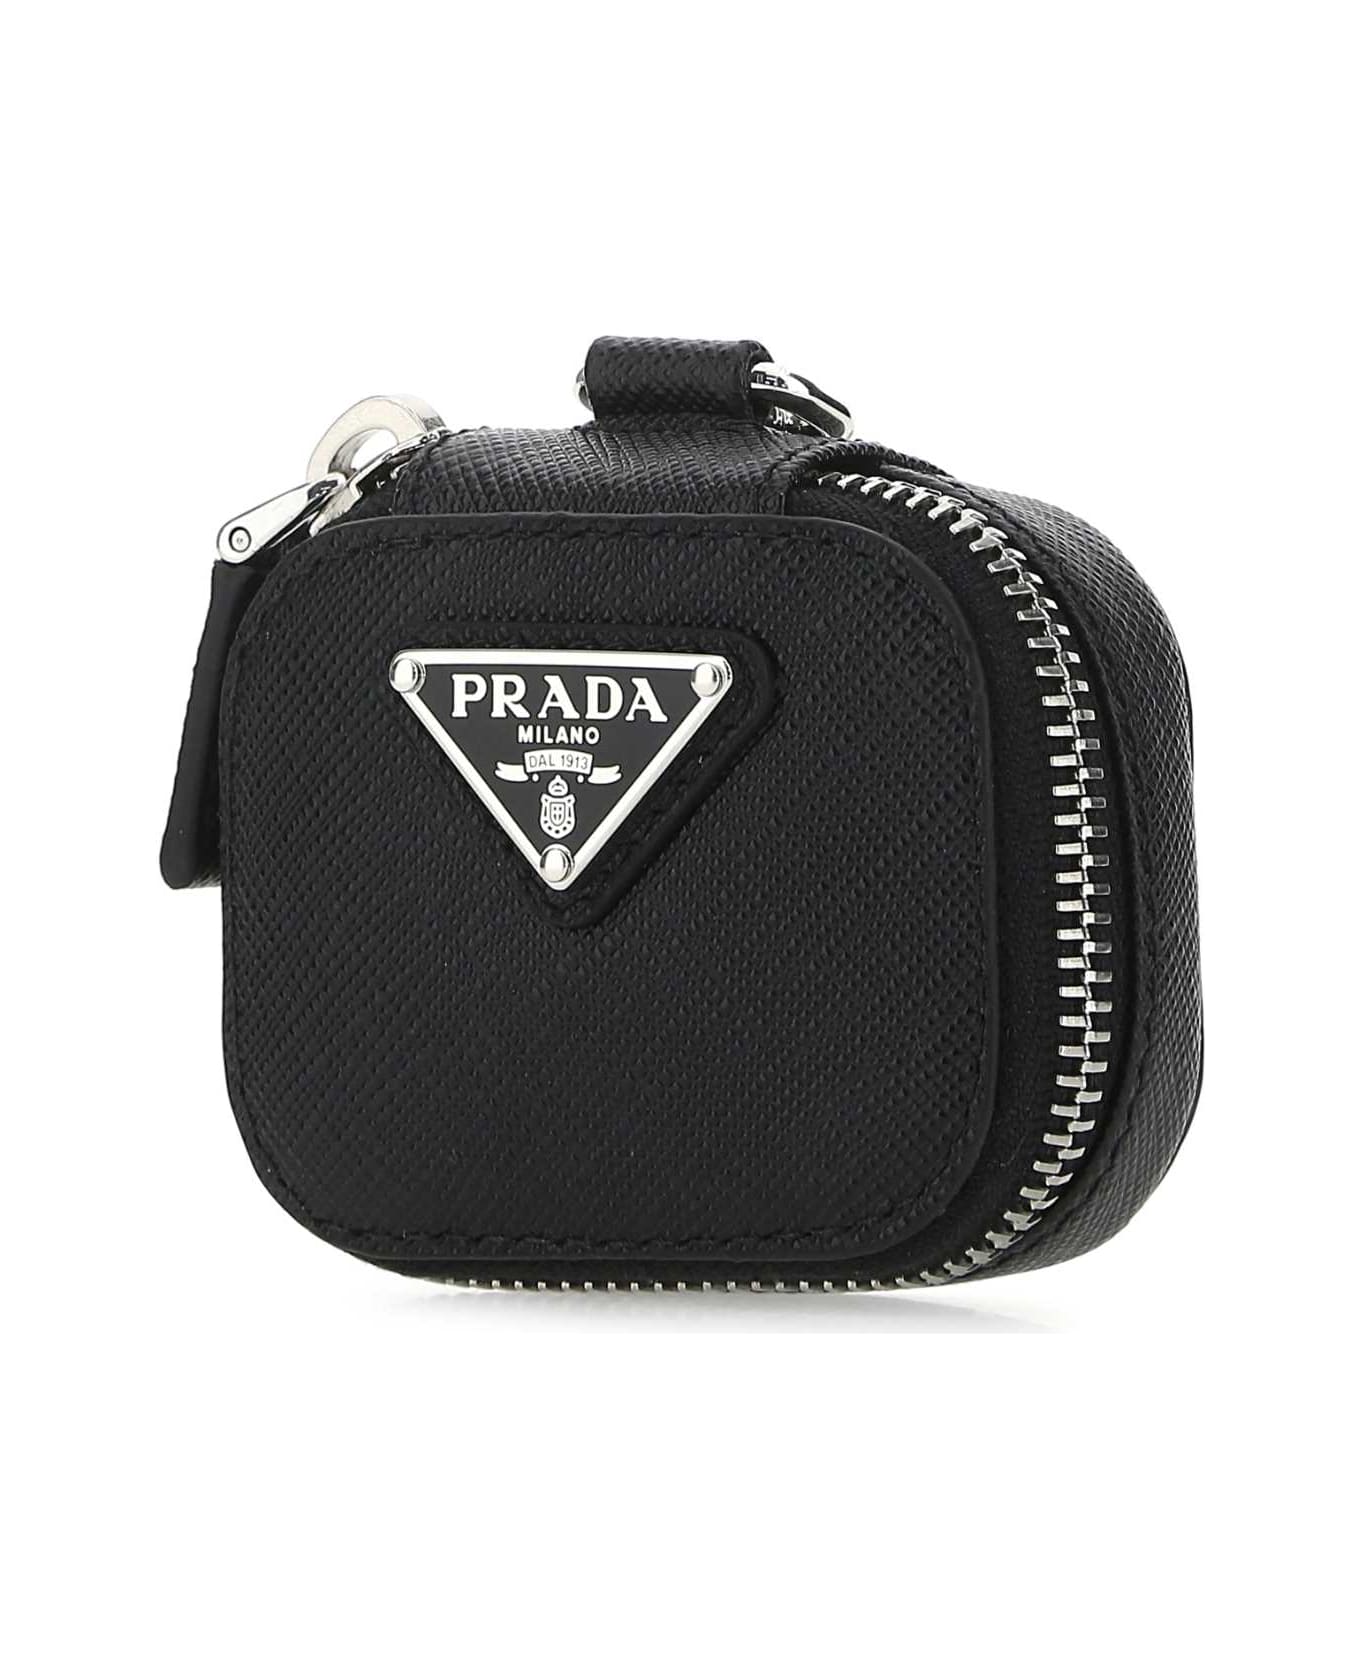 Prada Black Leather Air Pods Case - F0002 デジタルアクセサリー